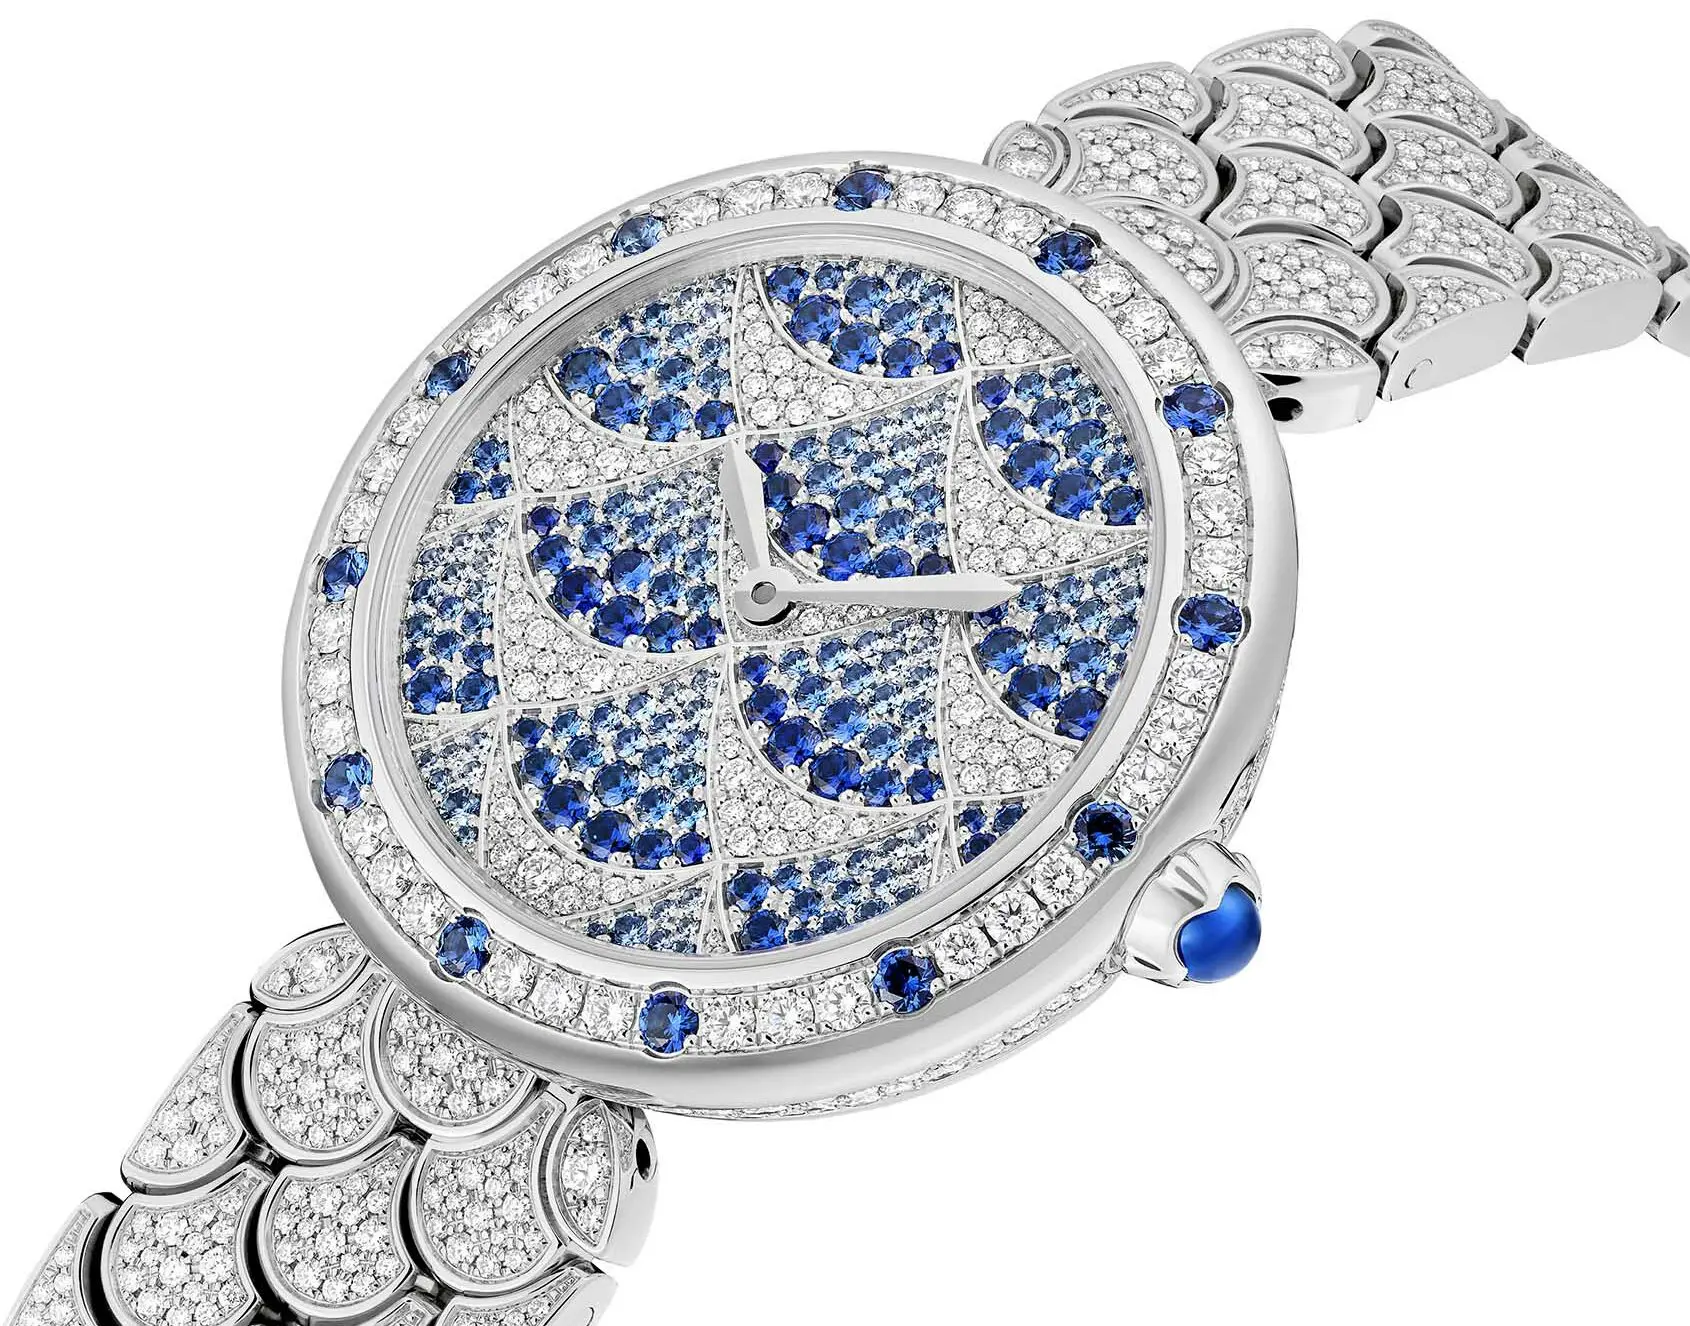 Bulgari, Hublot Bolster LVMH's Q4 Watch, Jewelry Sales